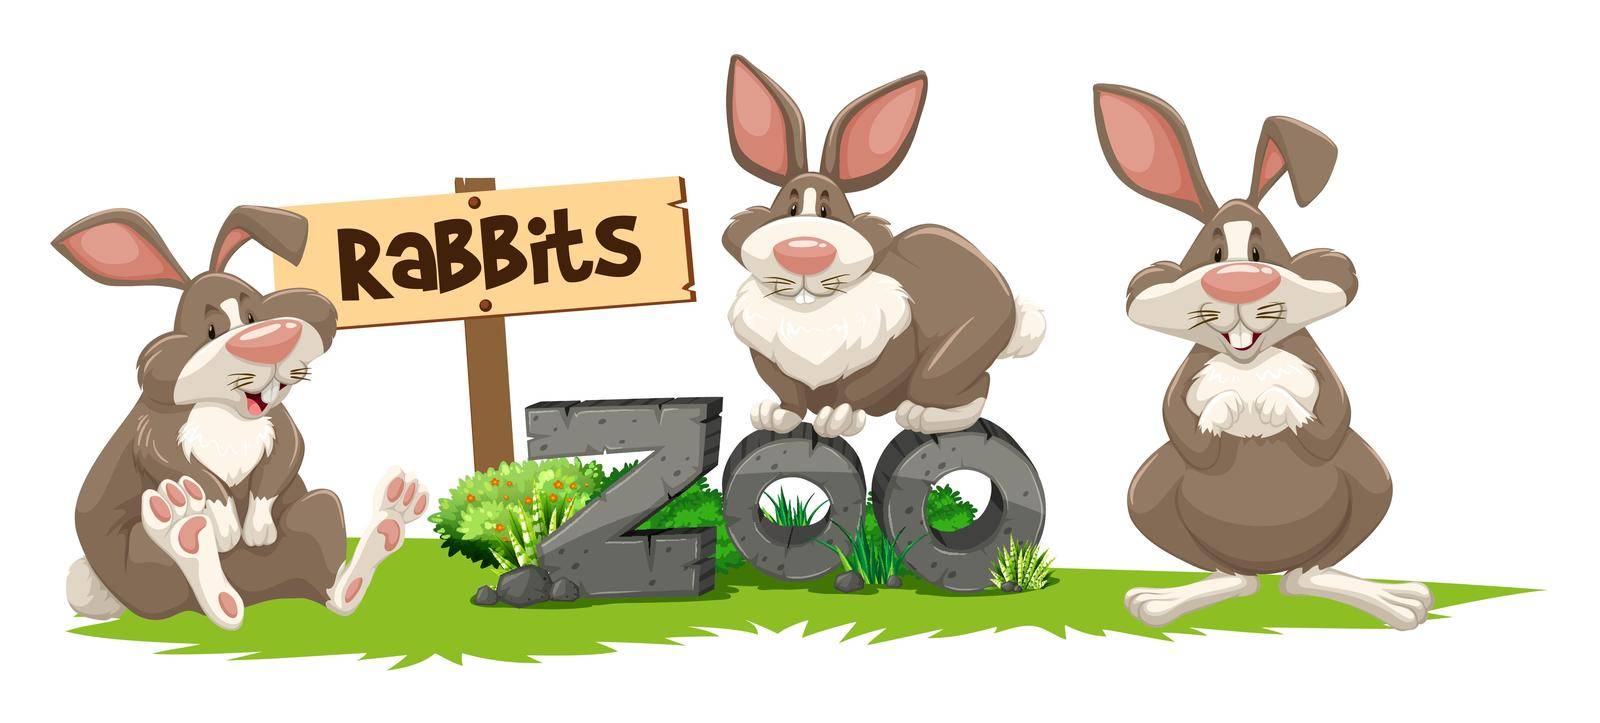 Three rabbits at the zoo sign illustration